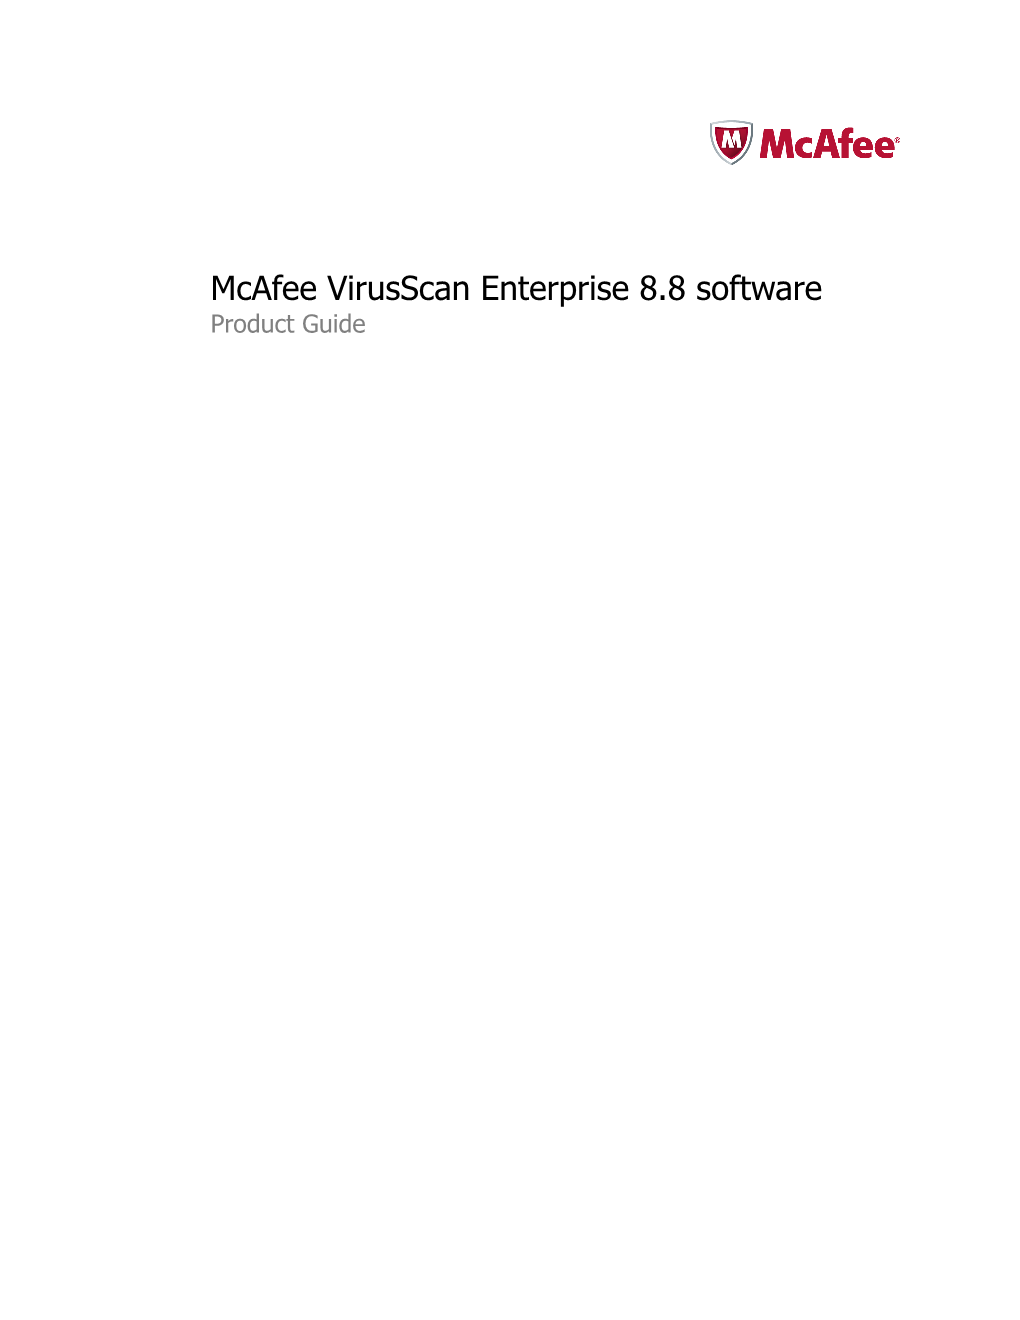 Virusscan Enterprise 8.8 Product Guide Contents